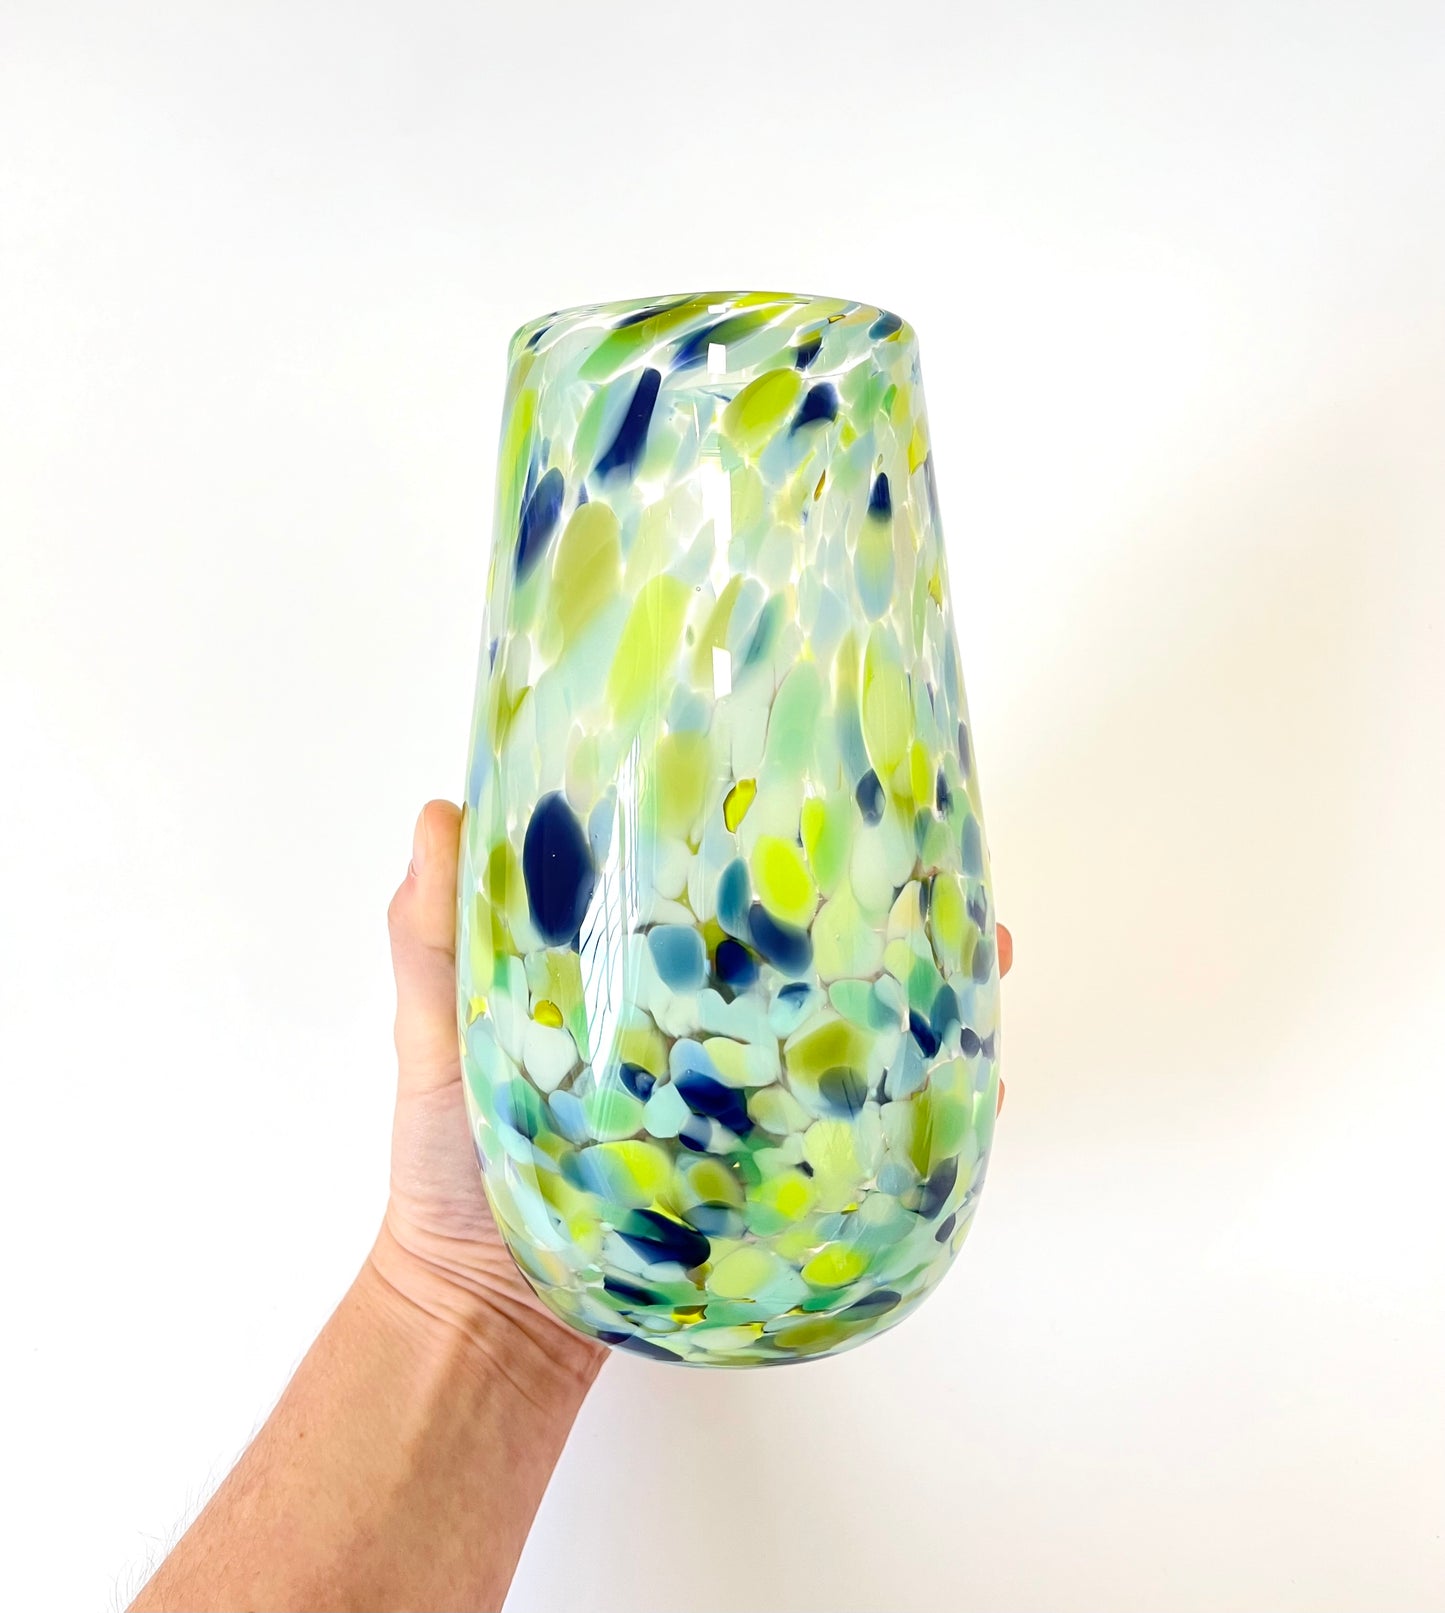 Handblown Glass Cylinder Vase - Forest Lake (April 24)